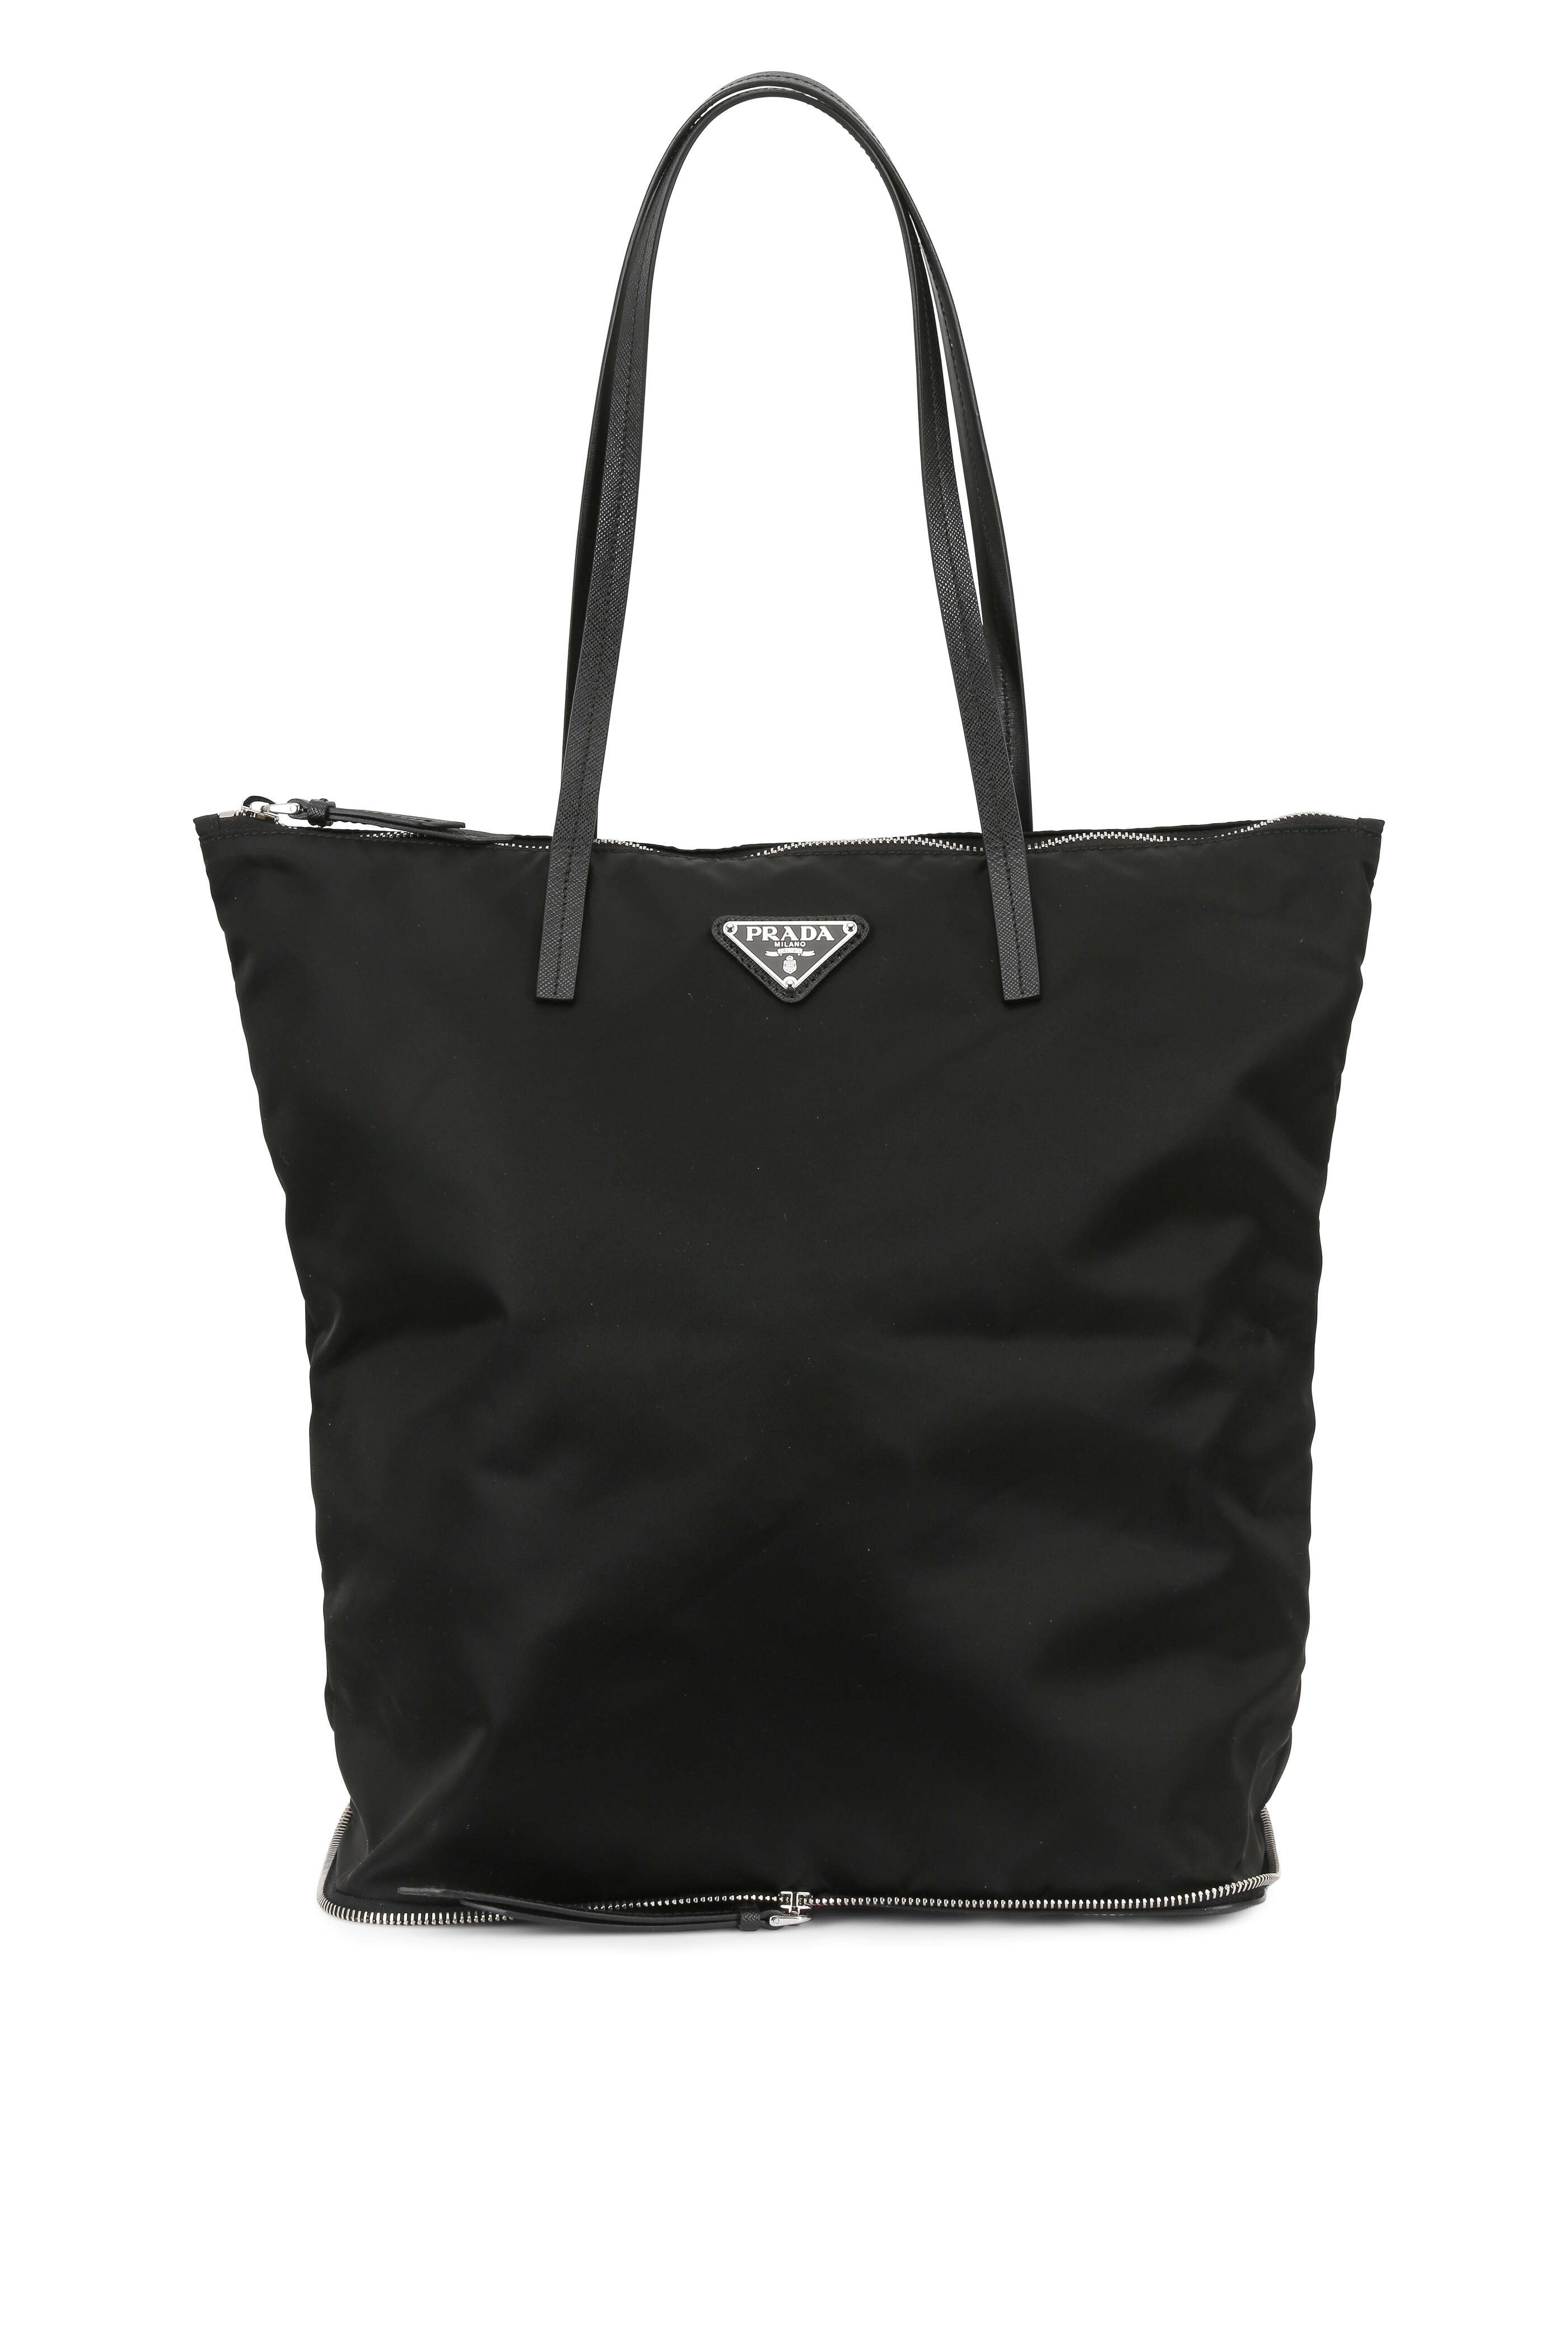 Prada Black Nylon Tote Travel Bag